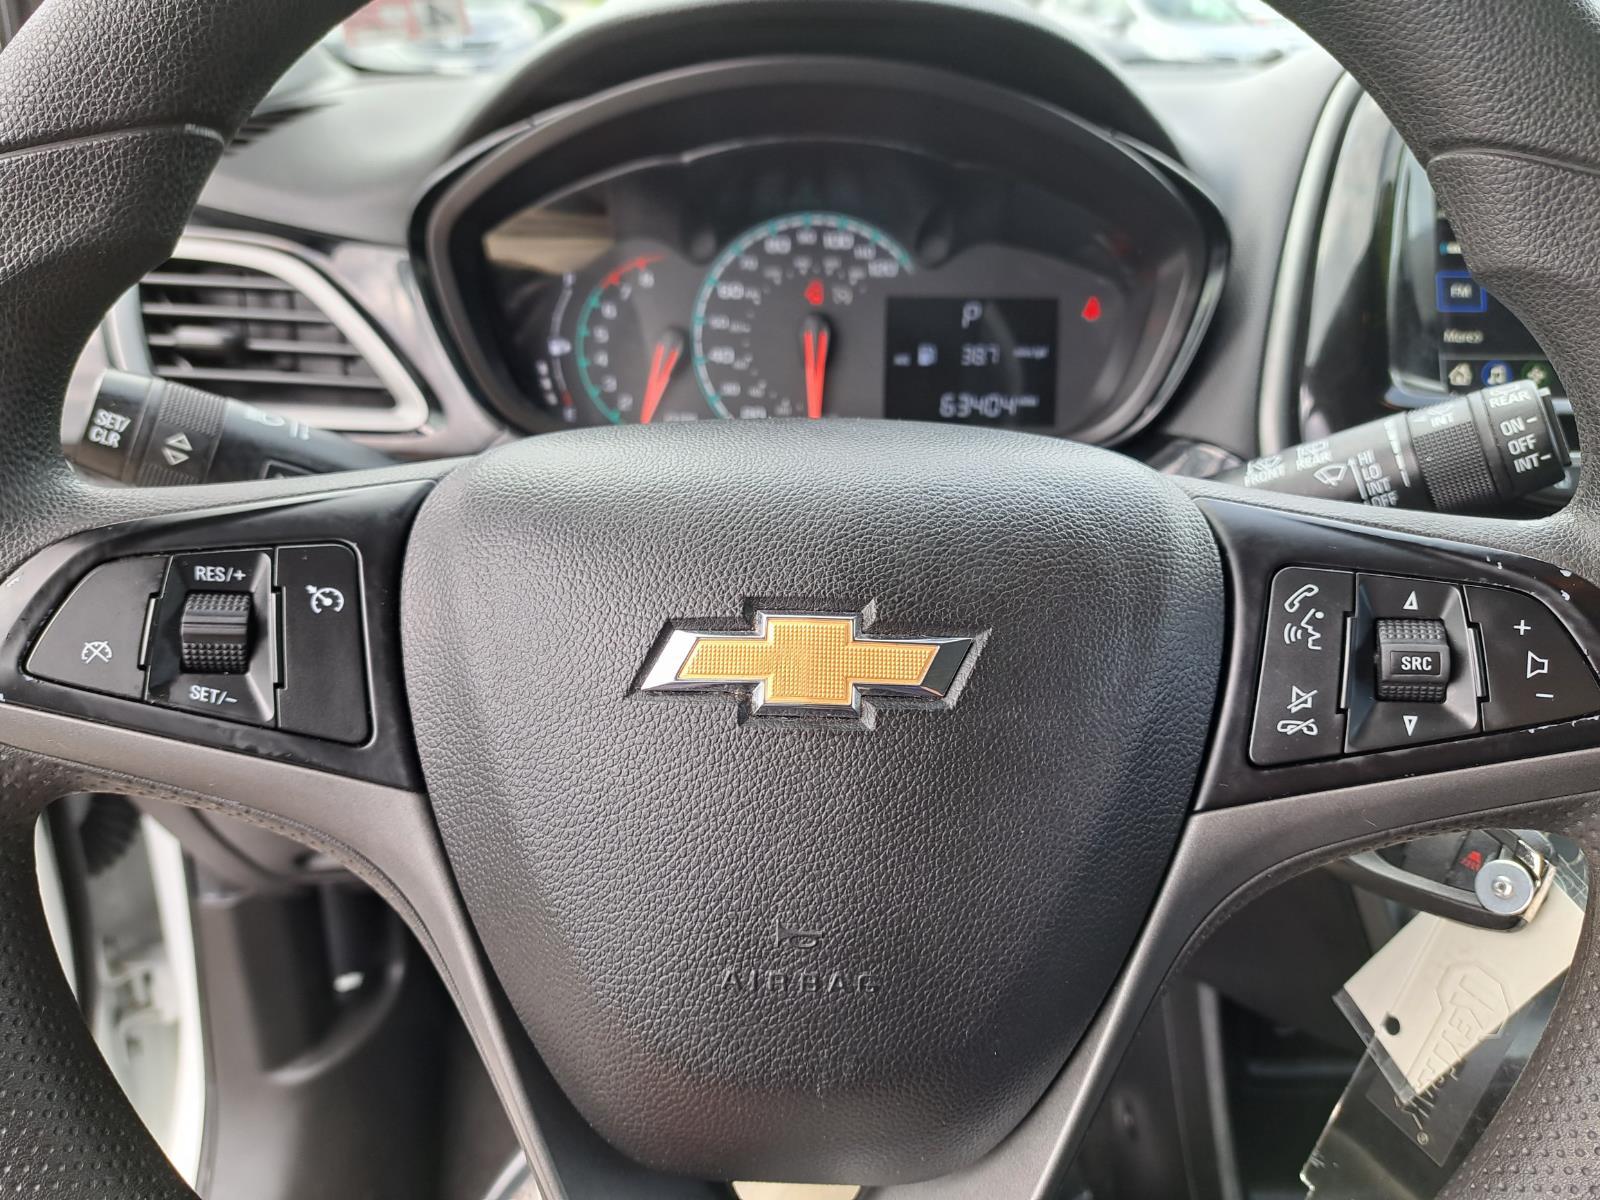 2020 Chevrolet Spark LT Hatchback 4 Dr. Front Wheel Drive 10